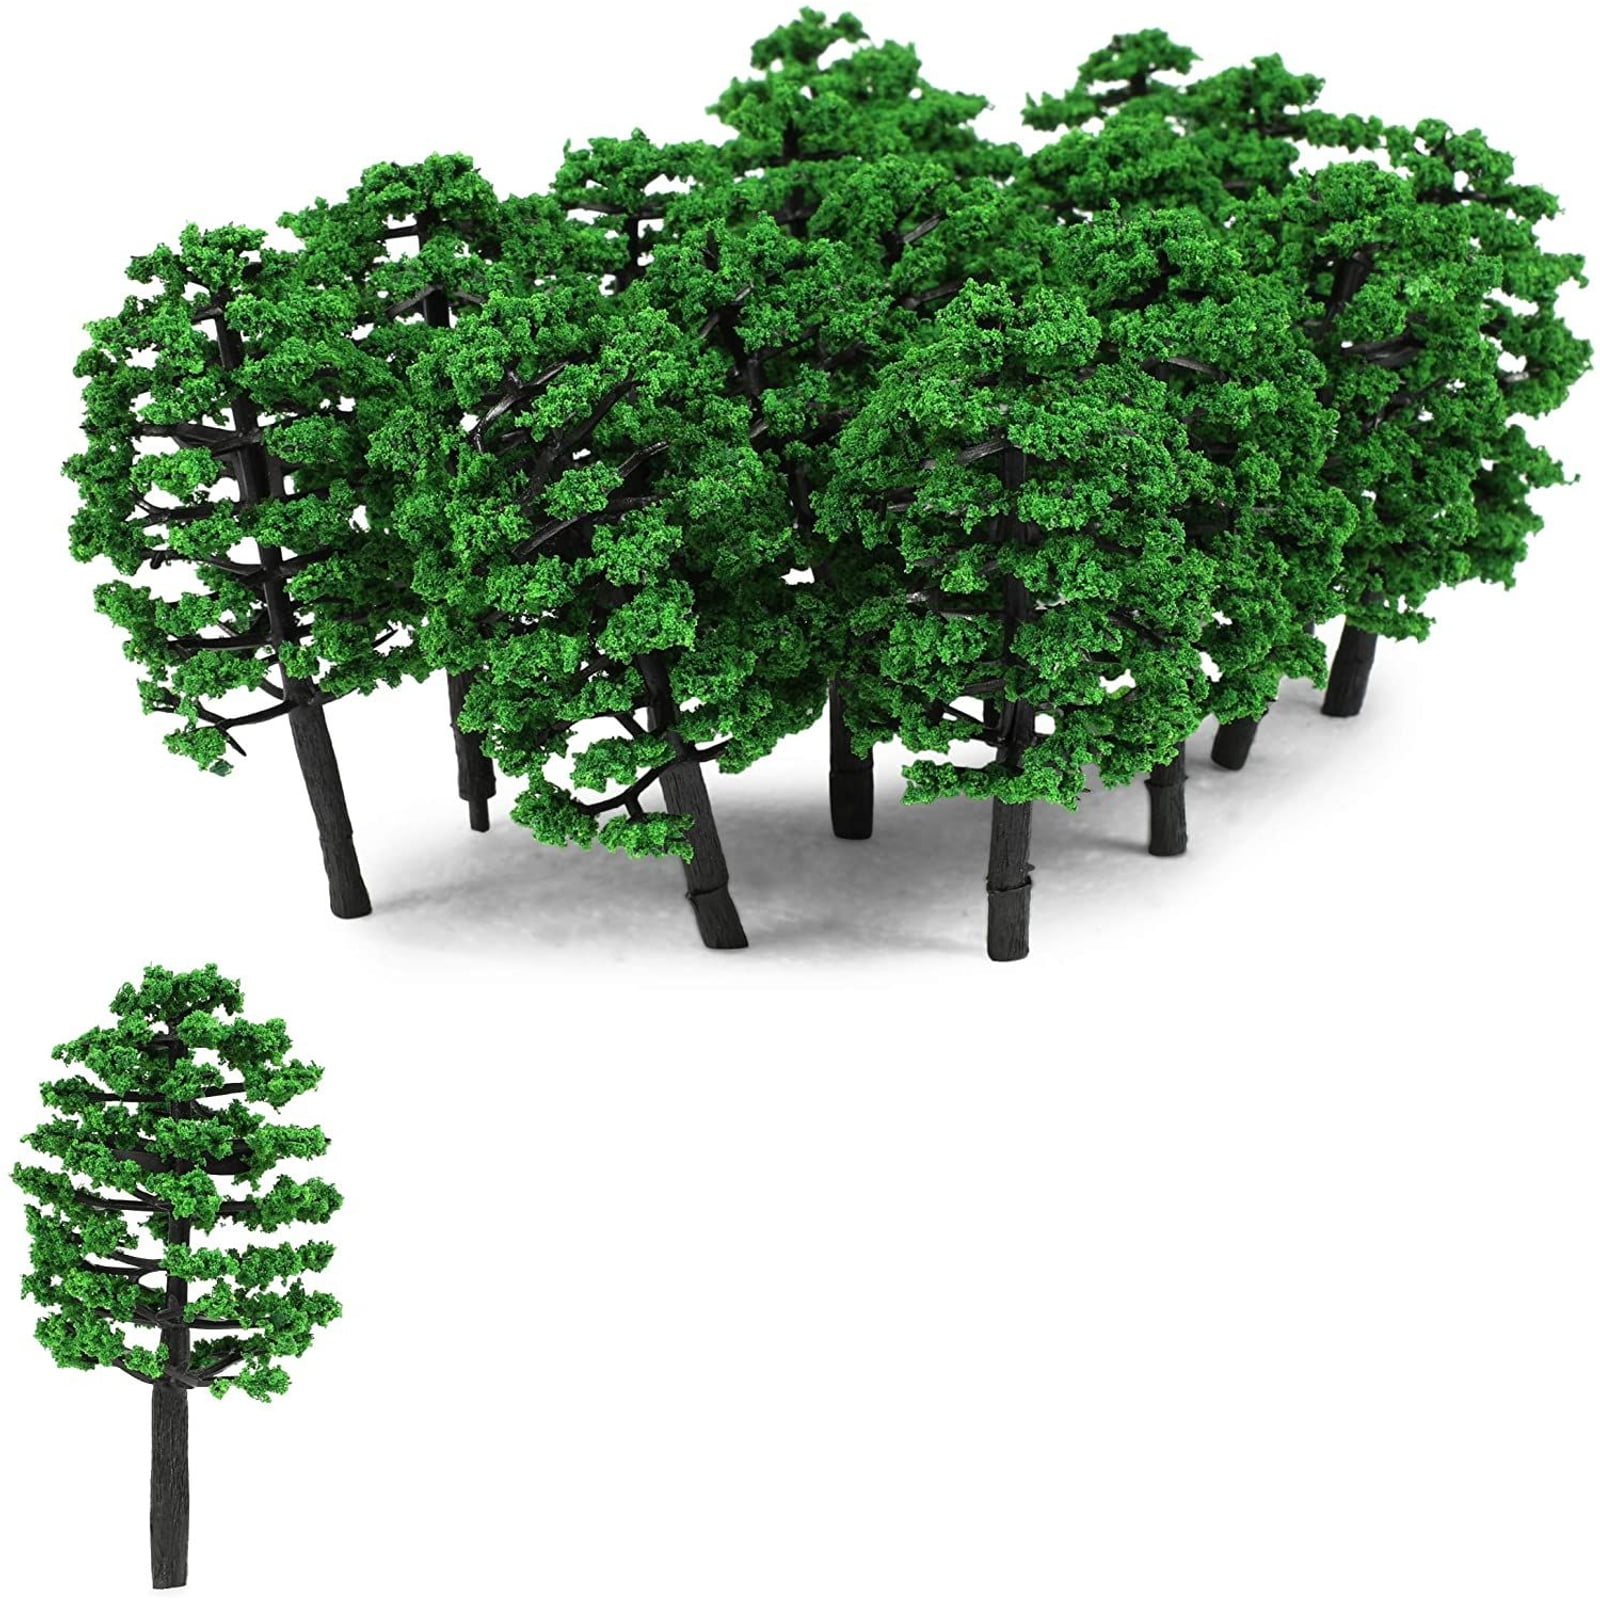 Model Cypress Trees Train Scenery Landscape Scale Model Light Green 